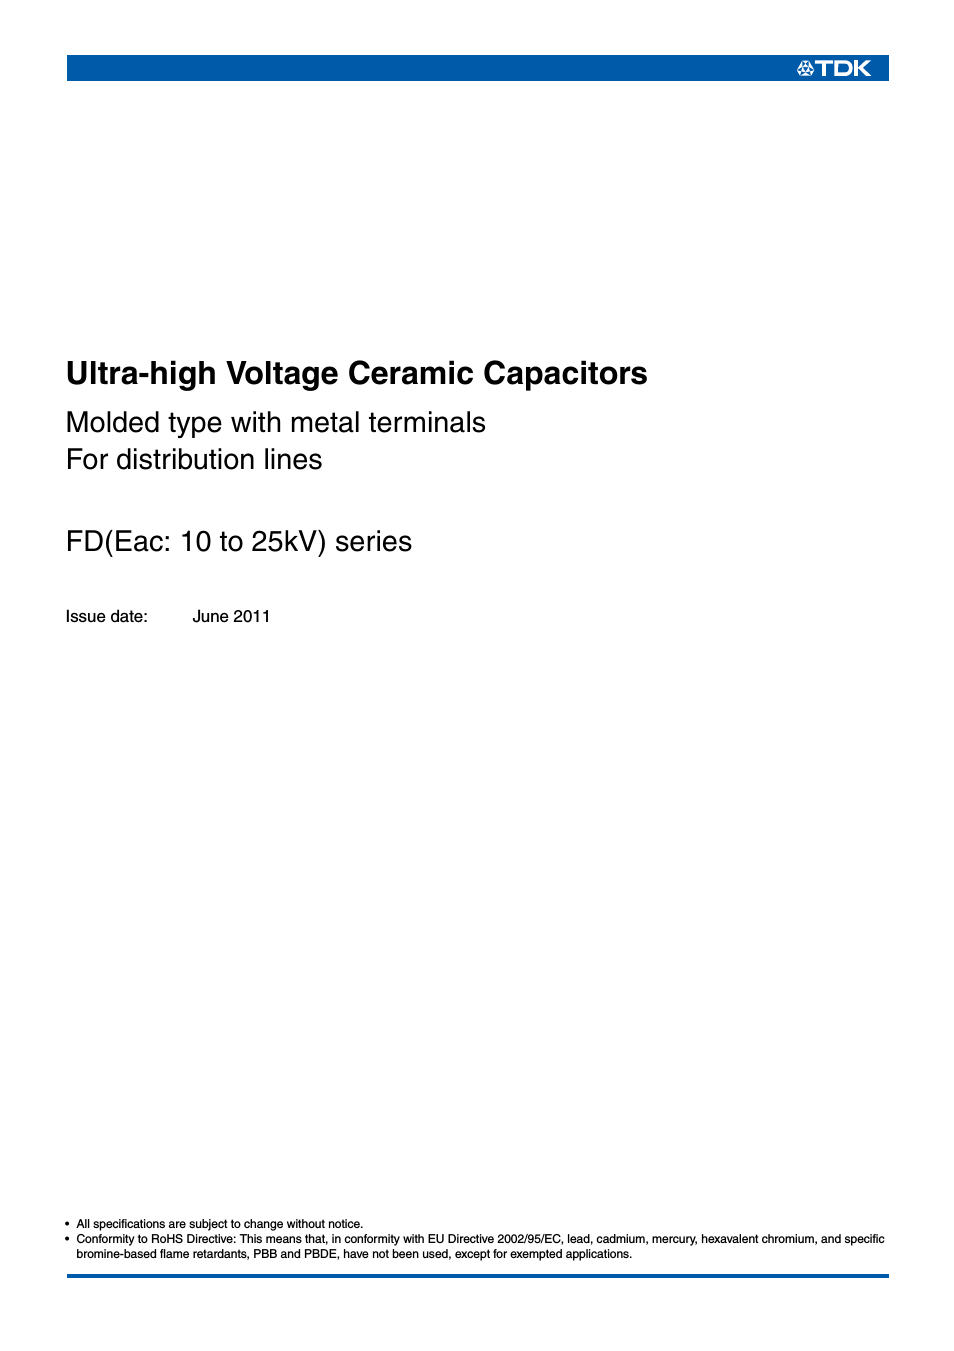 Ceramic Capacitors FD Series